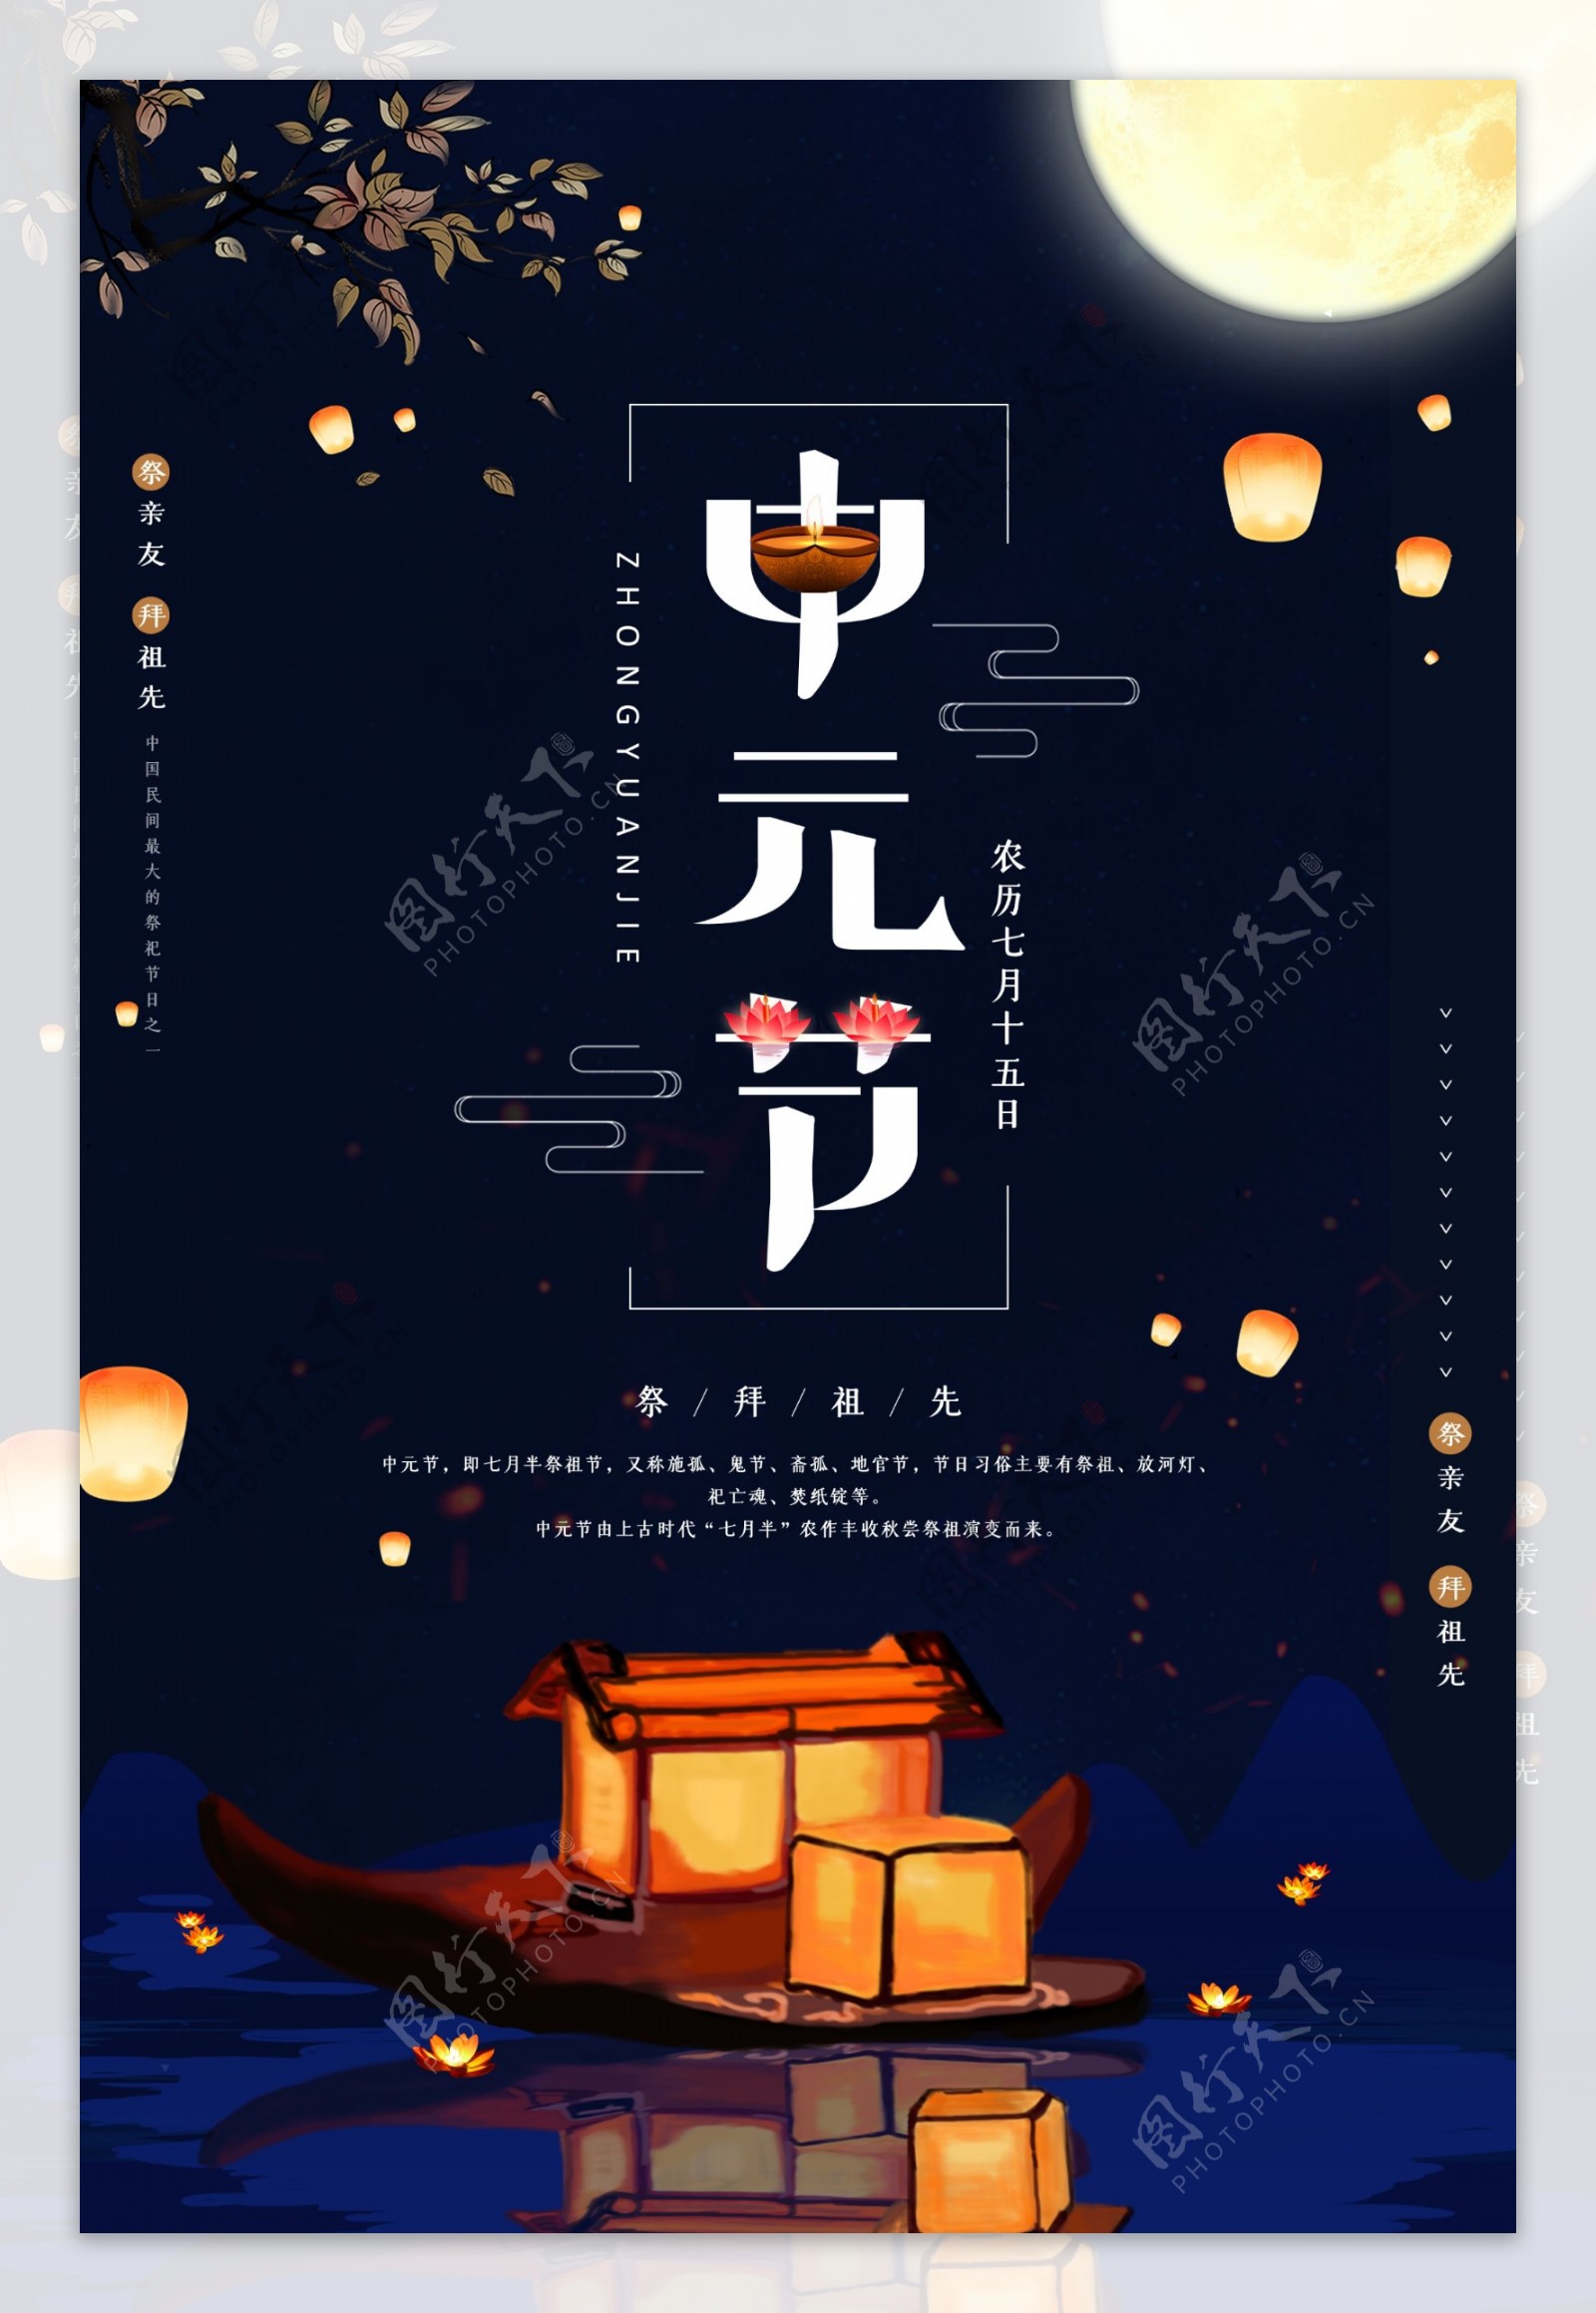 中国传统节日中元节素材壁纸_中元节素材海报壁纸_三千图片网